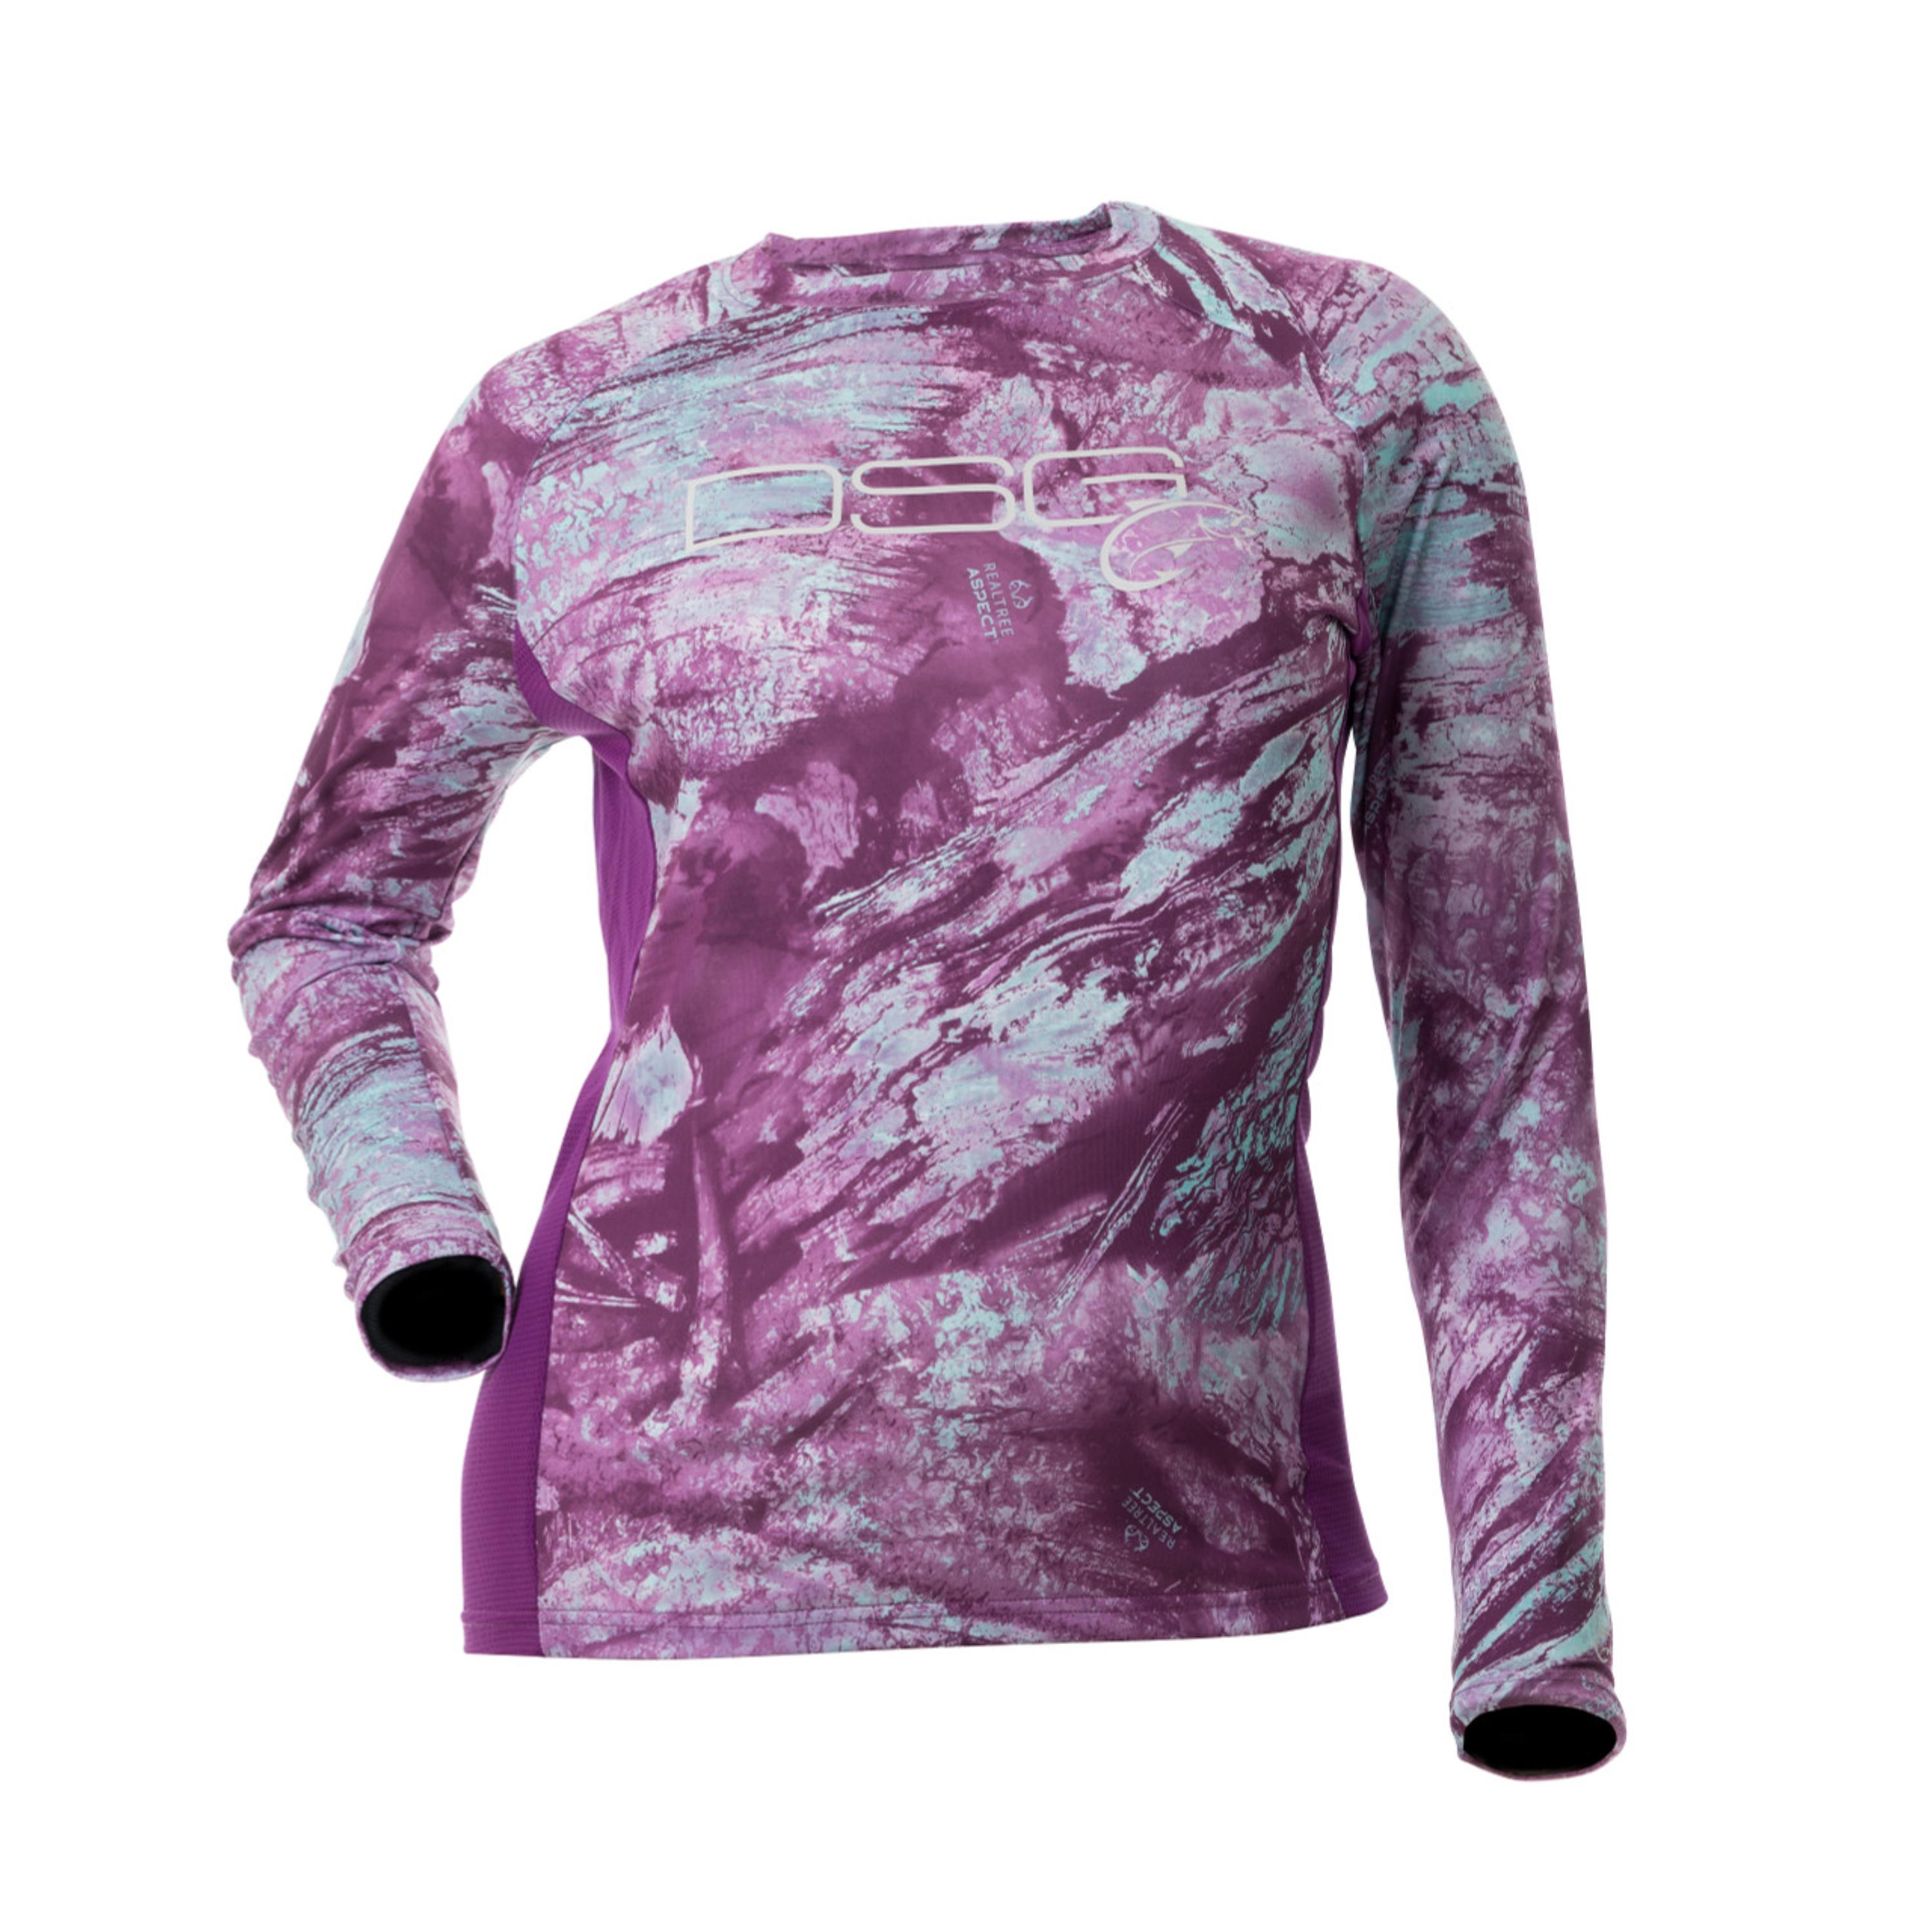 Sydney Realtree Aspect™ Camo Shirt - UPF 50+